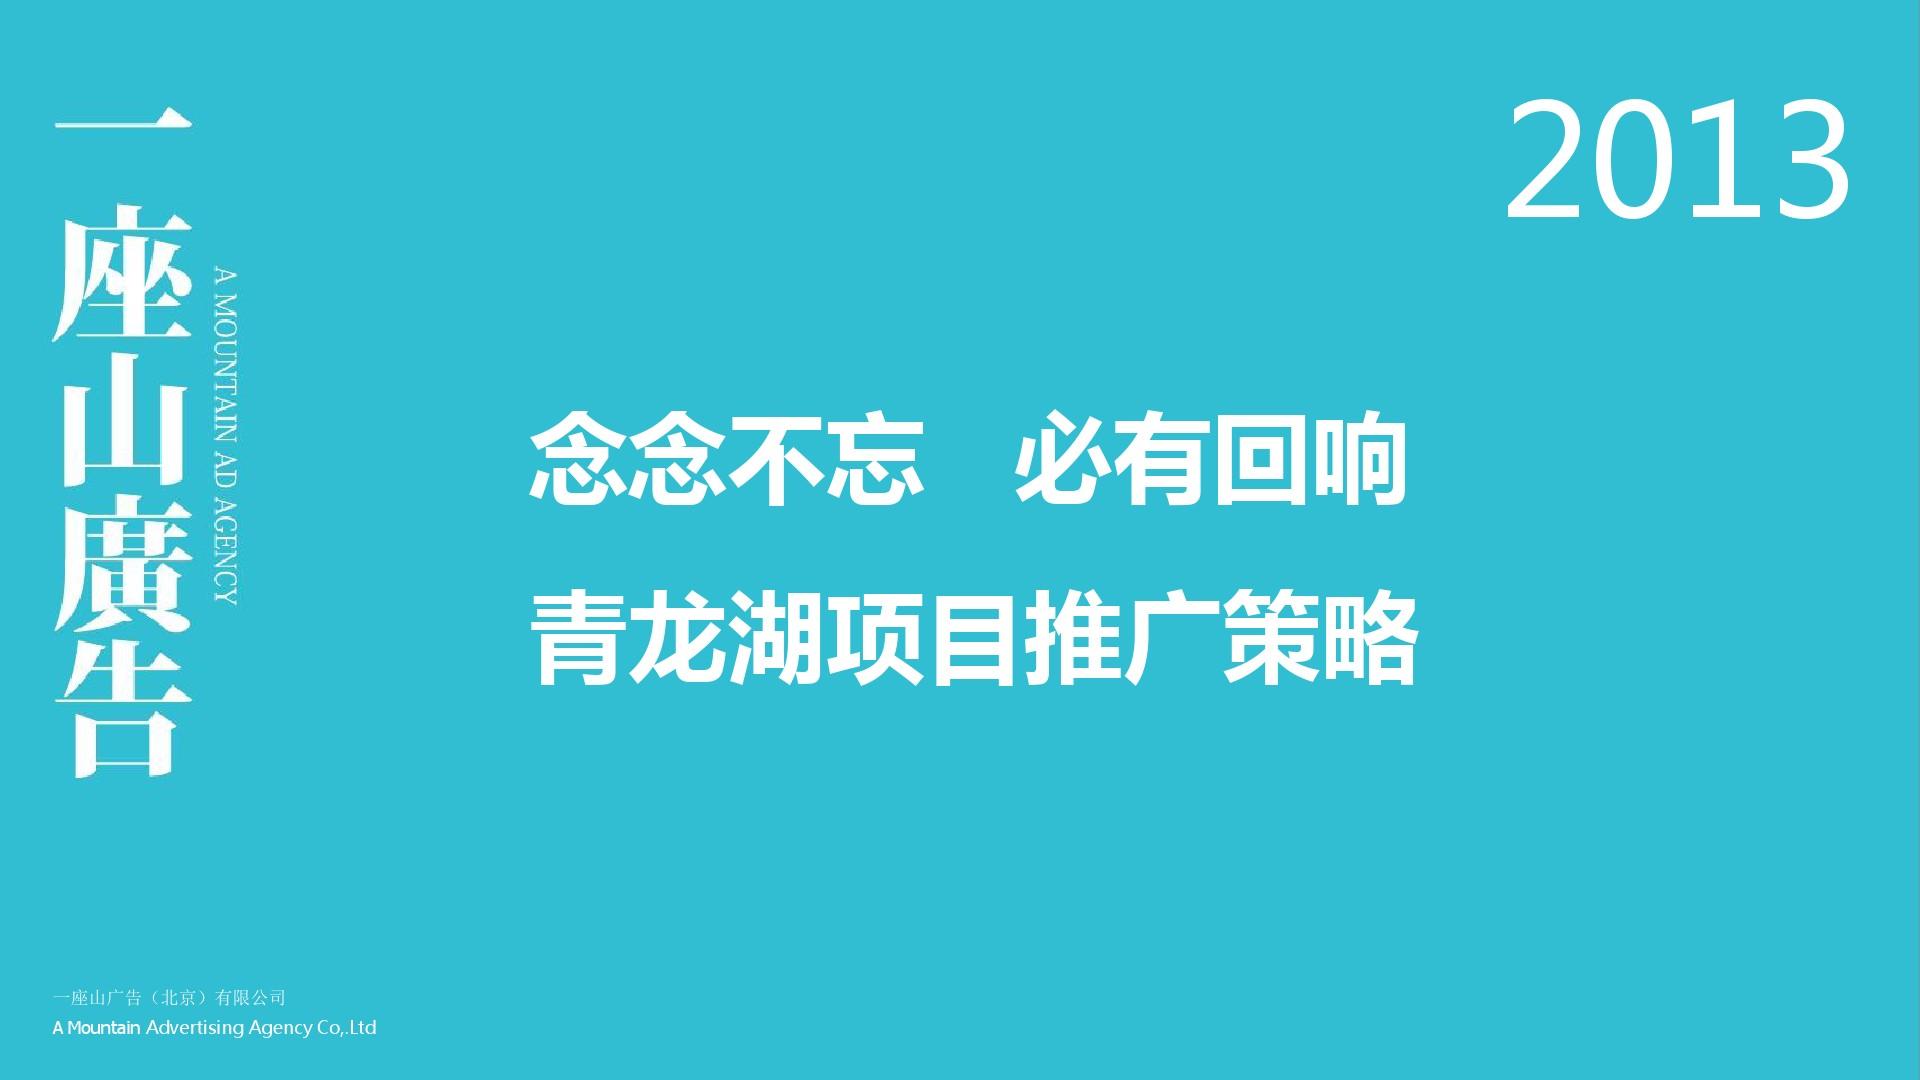 2013青龙湖项目推广策略一座山广告4.17